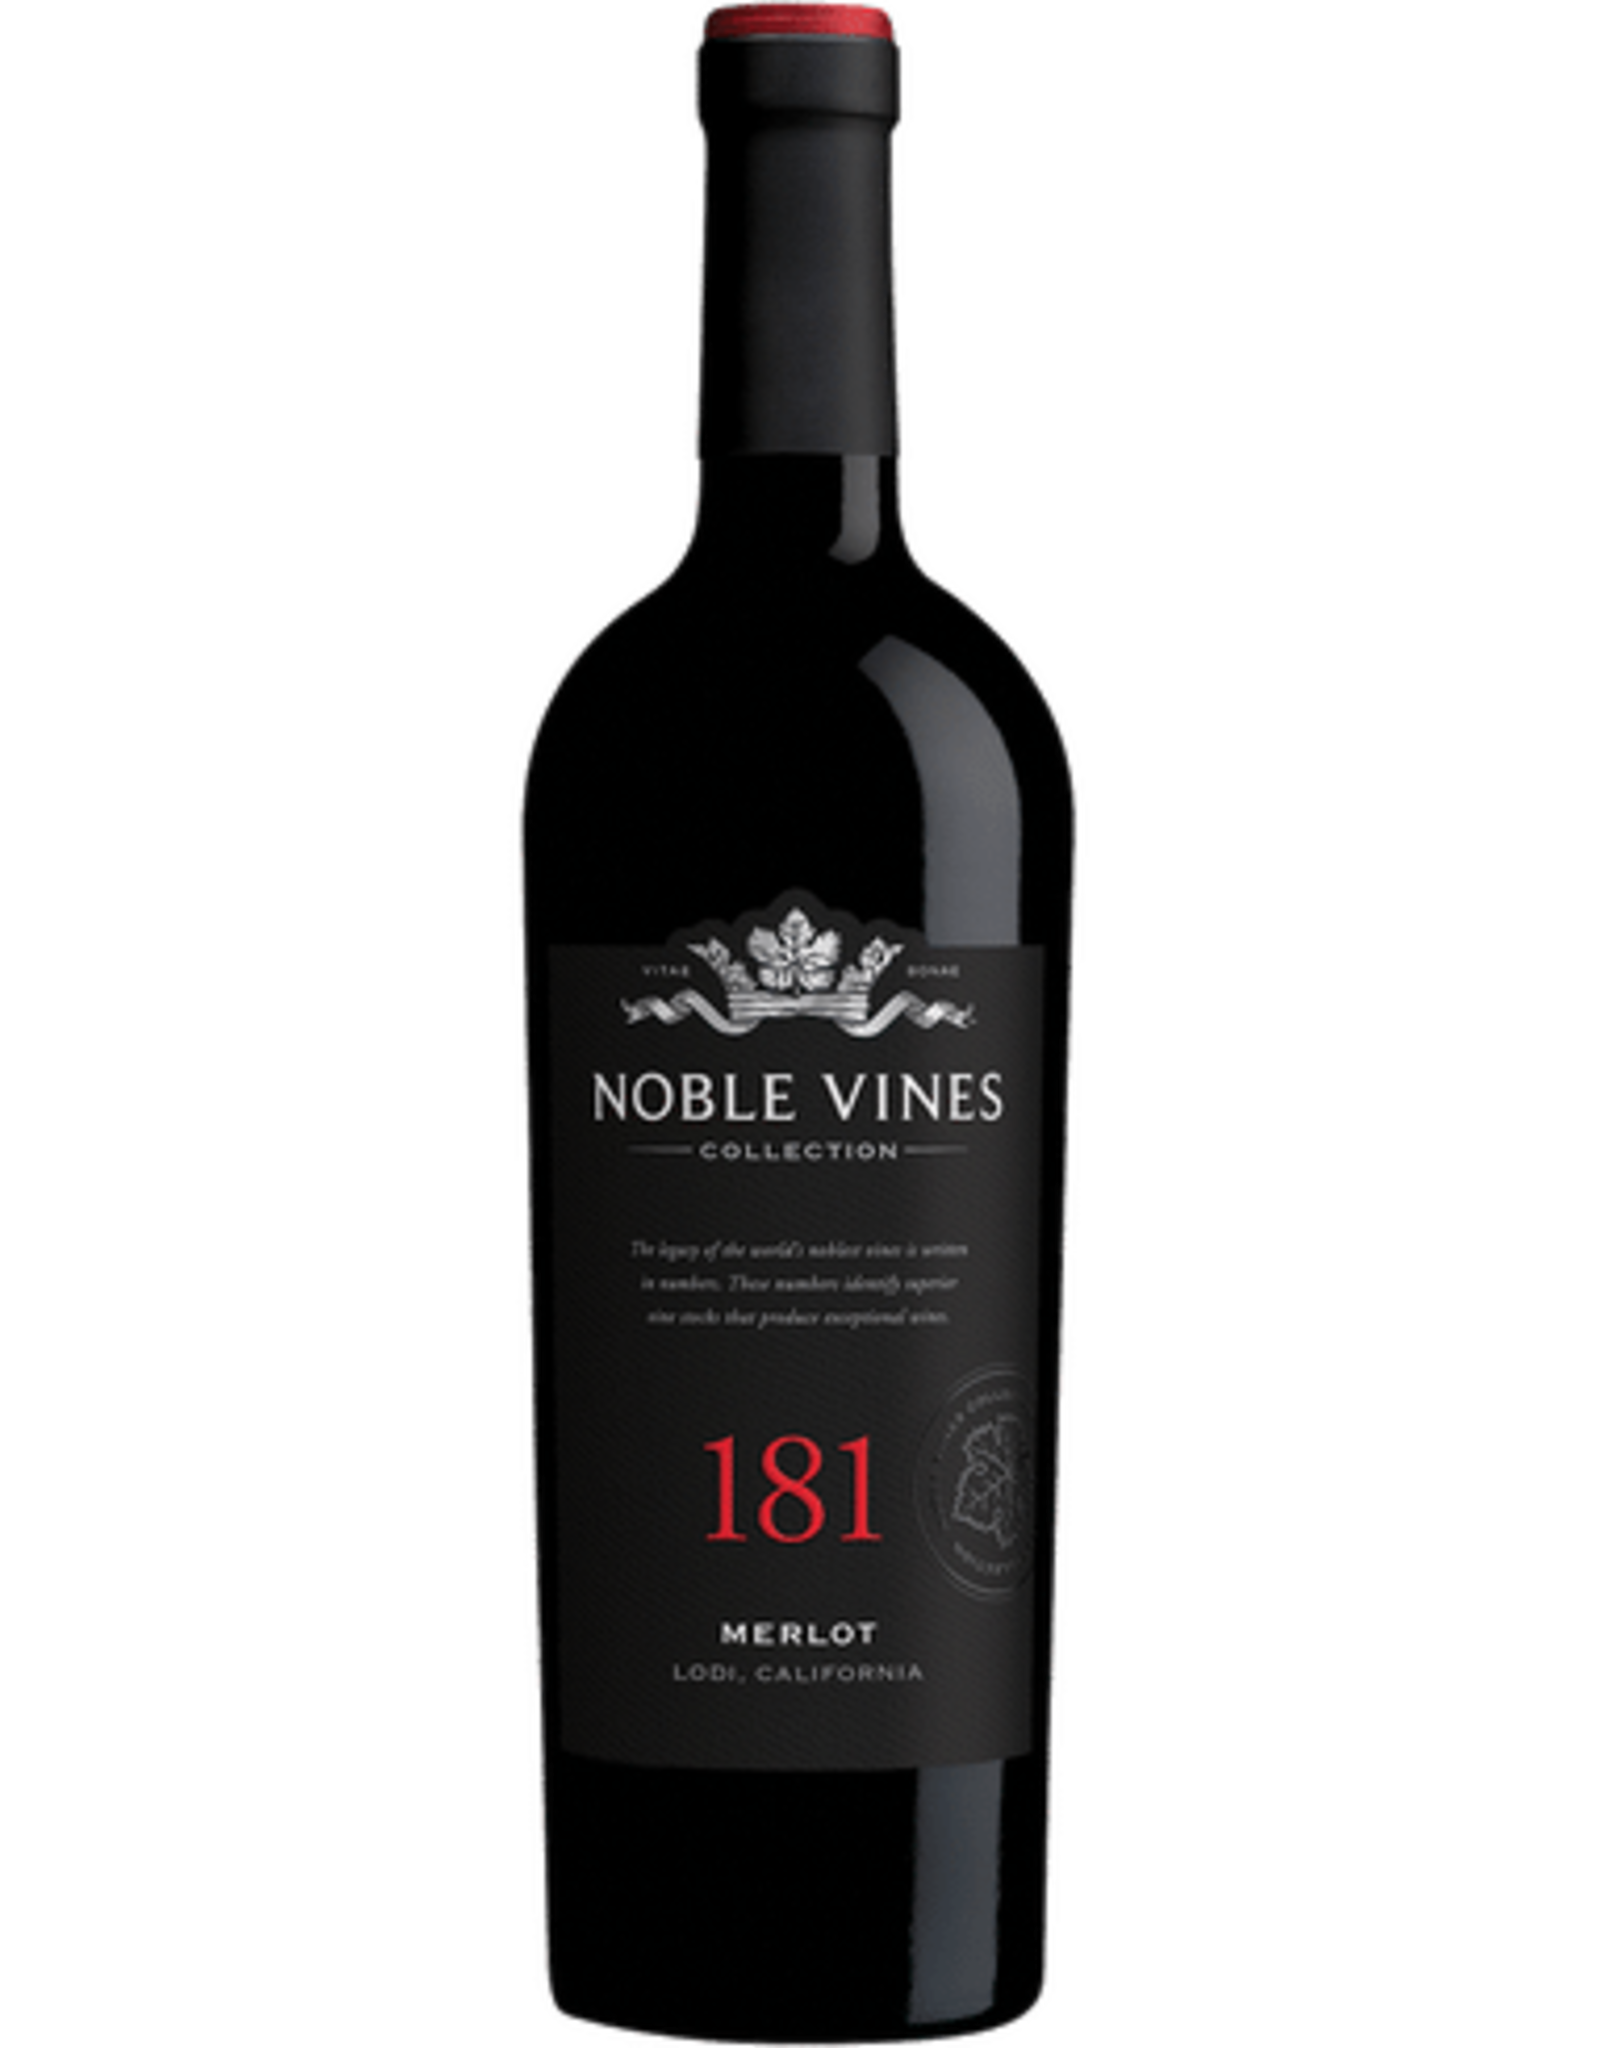 Noble Vines Noble Vines - 181 Merlot - 750ml